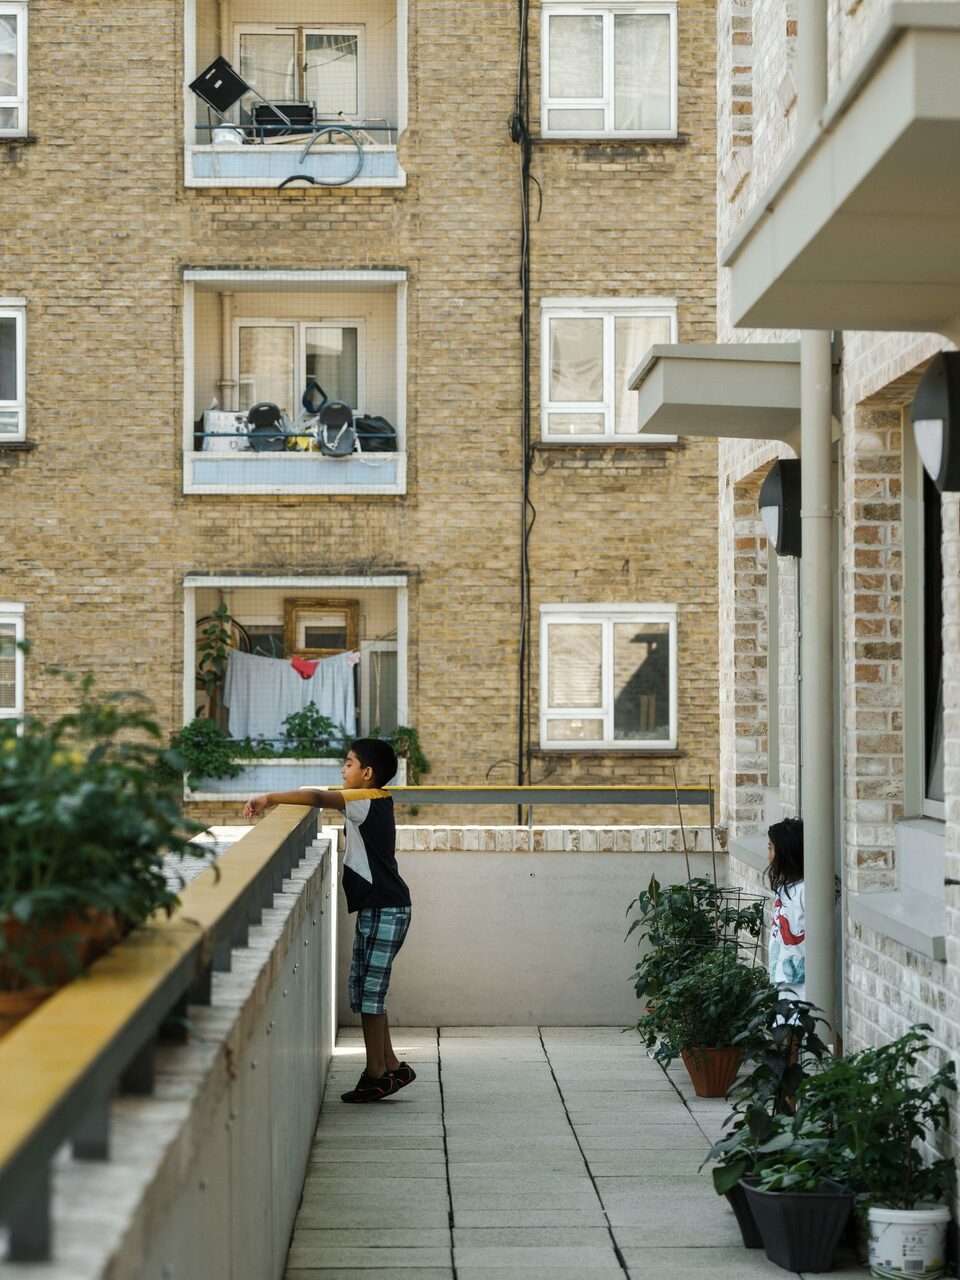 Kirkfell önkormányzati bérház, Camden, London – Tervező: Mae Architects – Fotó: Stäle Eriksen és Tim Crocker 